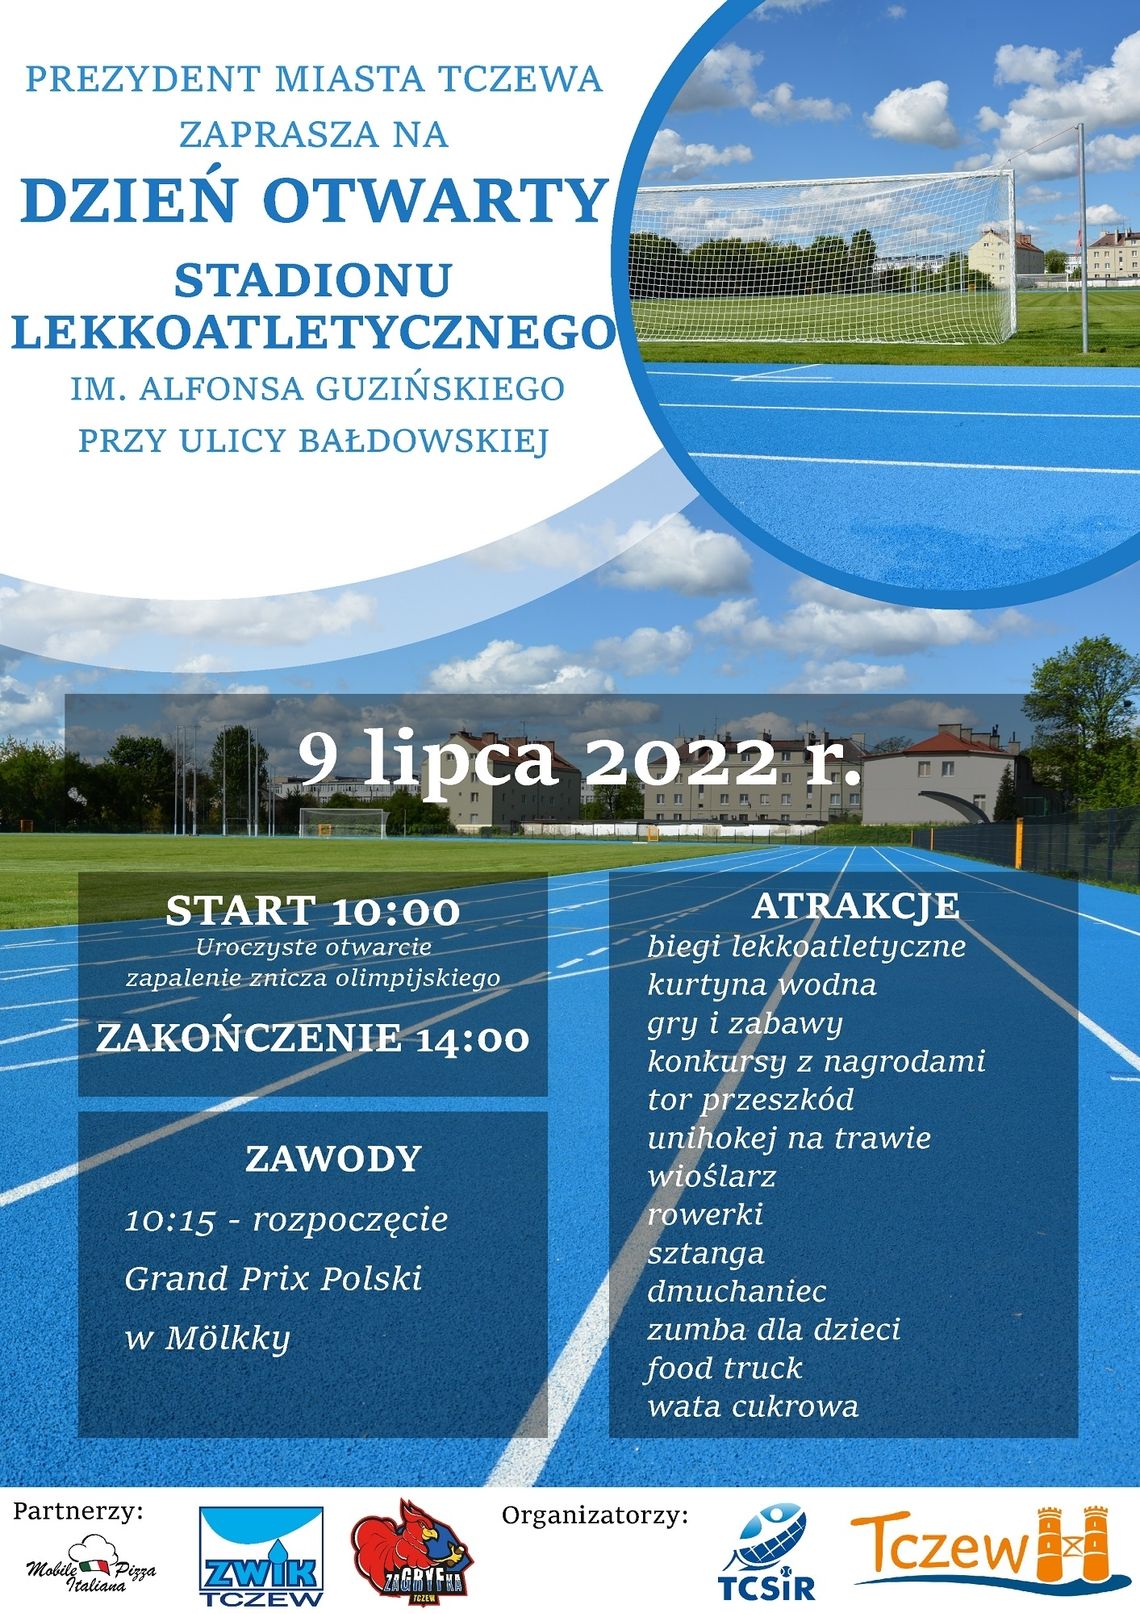 Dzień Otwarty Stadionu Lekkoatletycznego | 4. runda Grand Prix Polski w Molkky